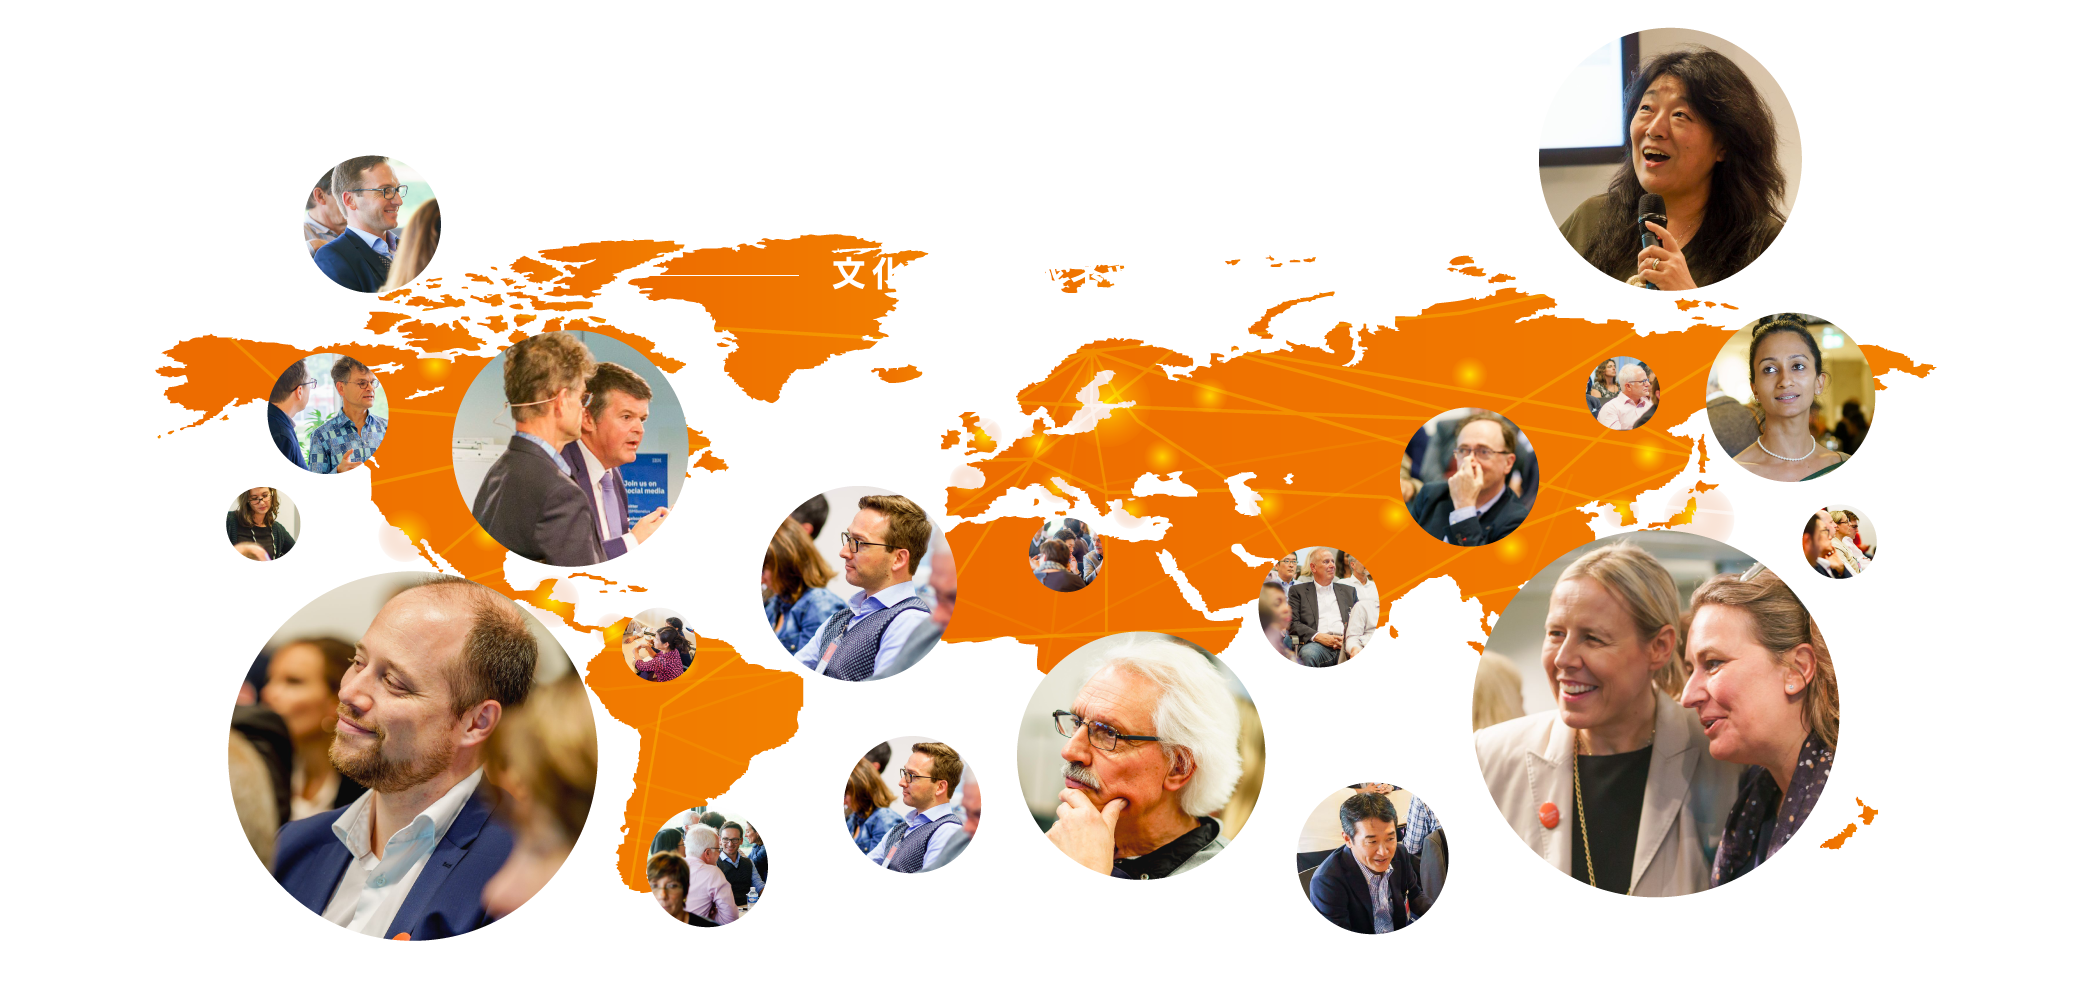 61か国×145名 文化の専門家ネットワーク